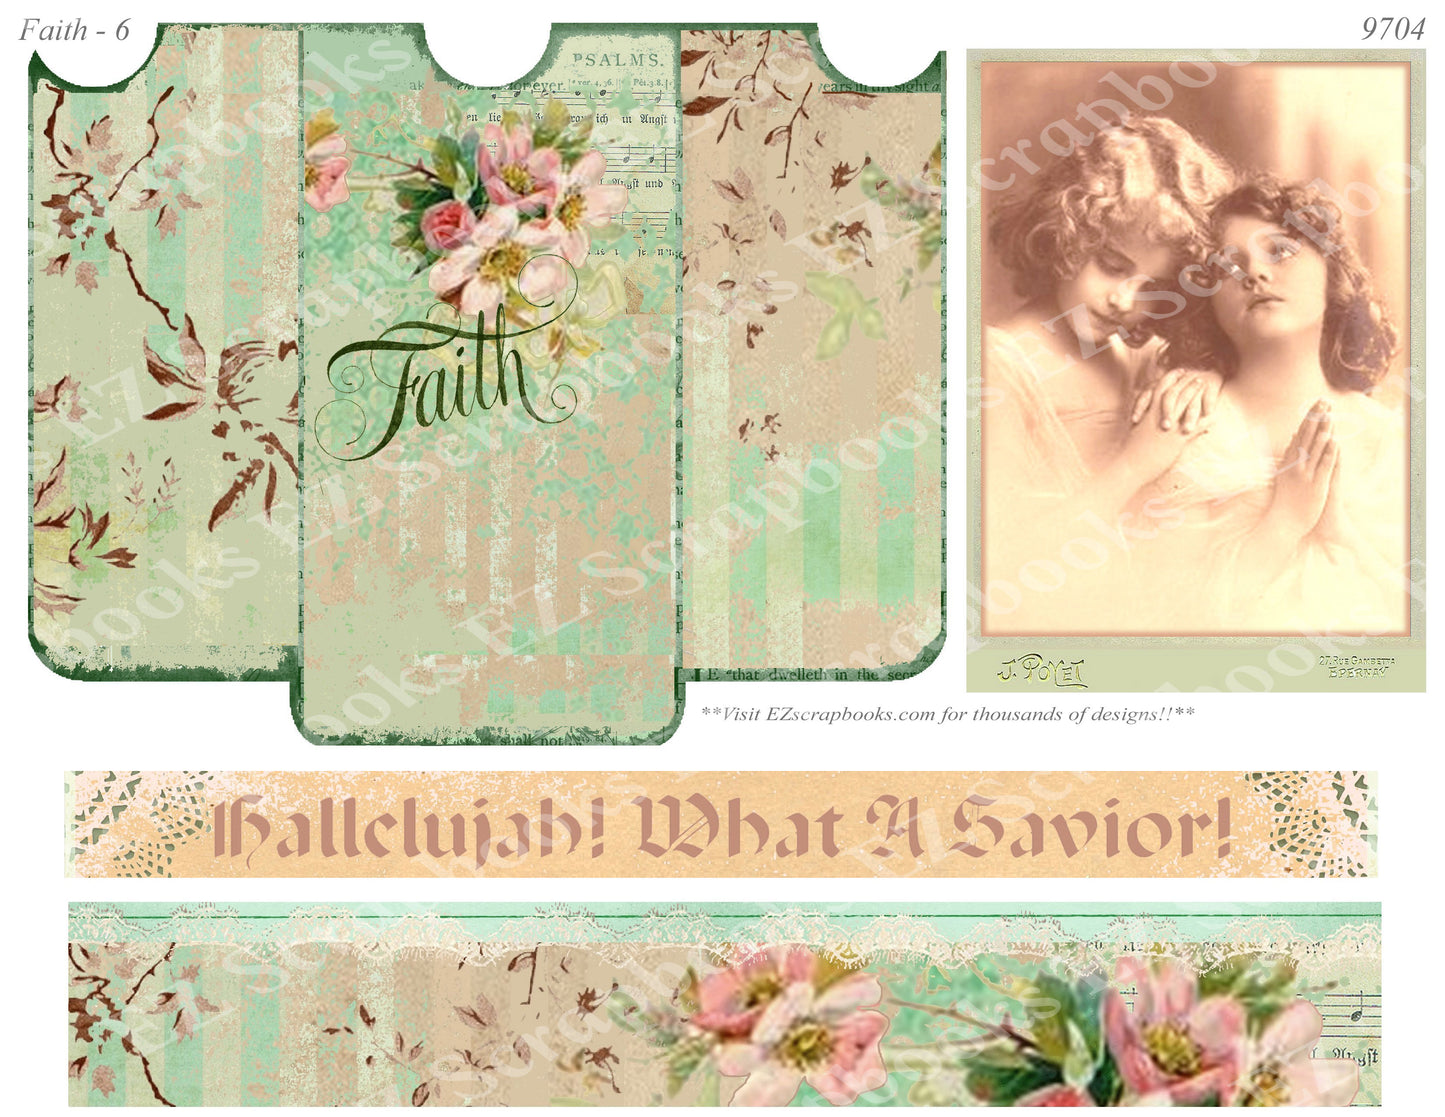 Faith - Embellishments - 6 - 9704 - EZscrapbooks Scrapbook Layouts Faith - Religious